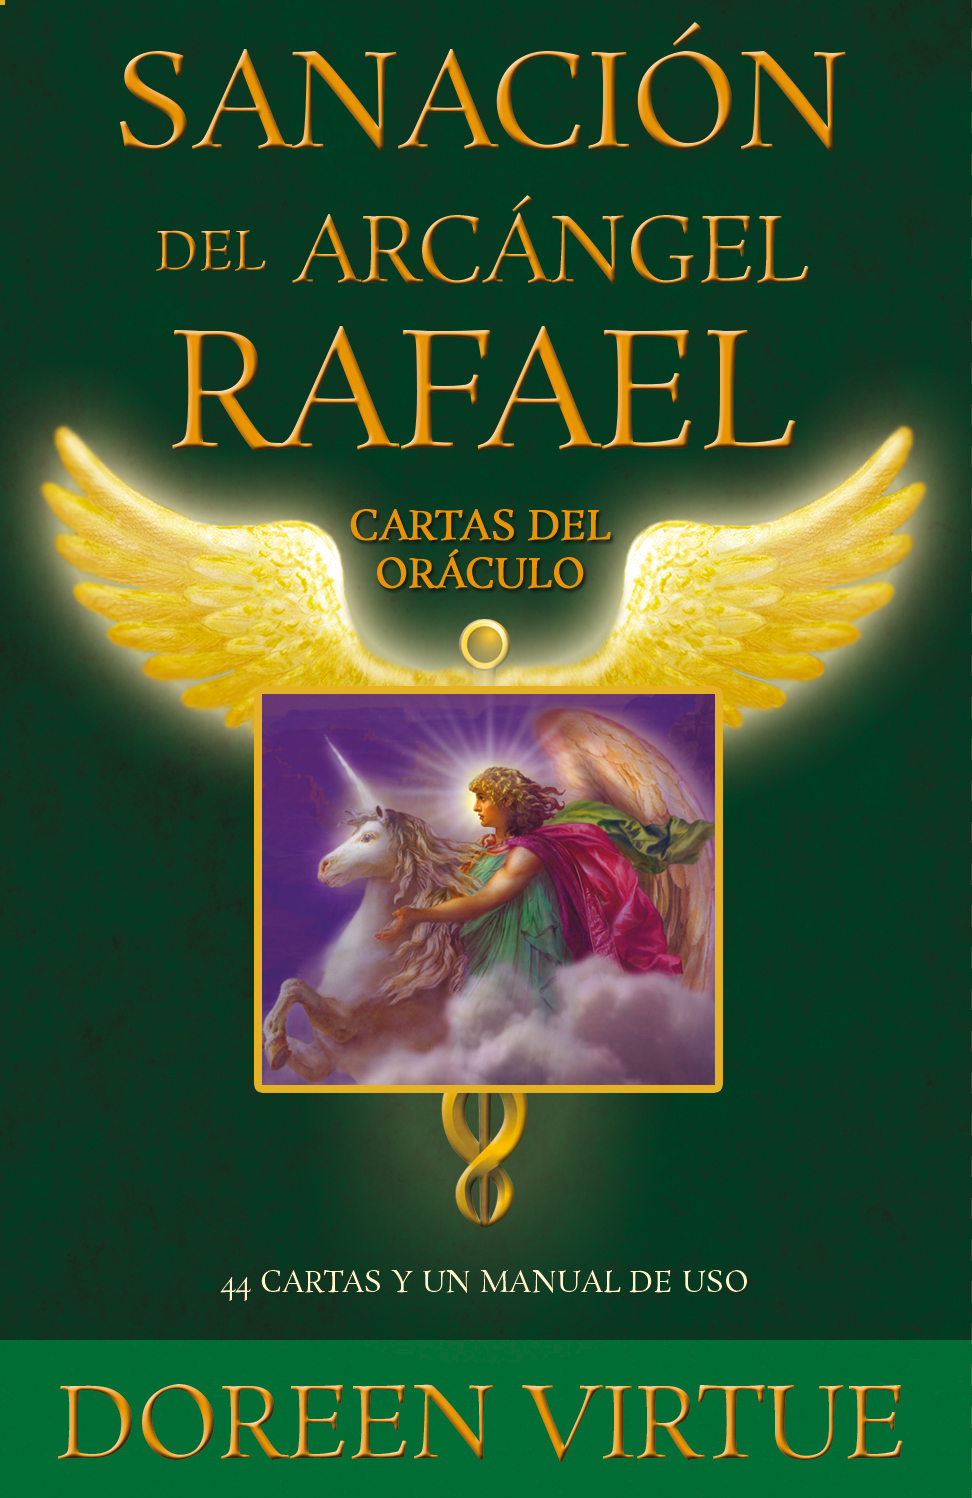 Sanación del arcángel Rafael. Cartas del oráculo